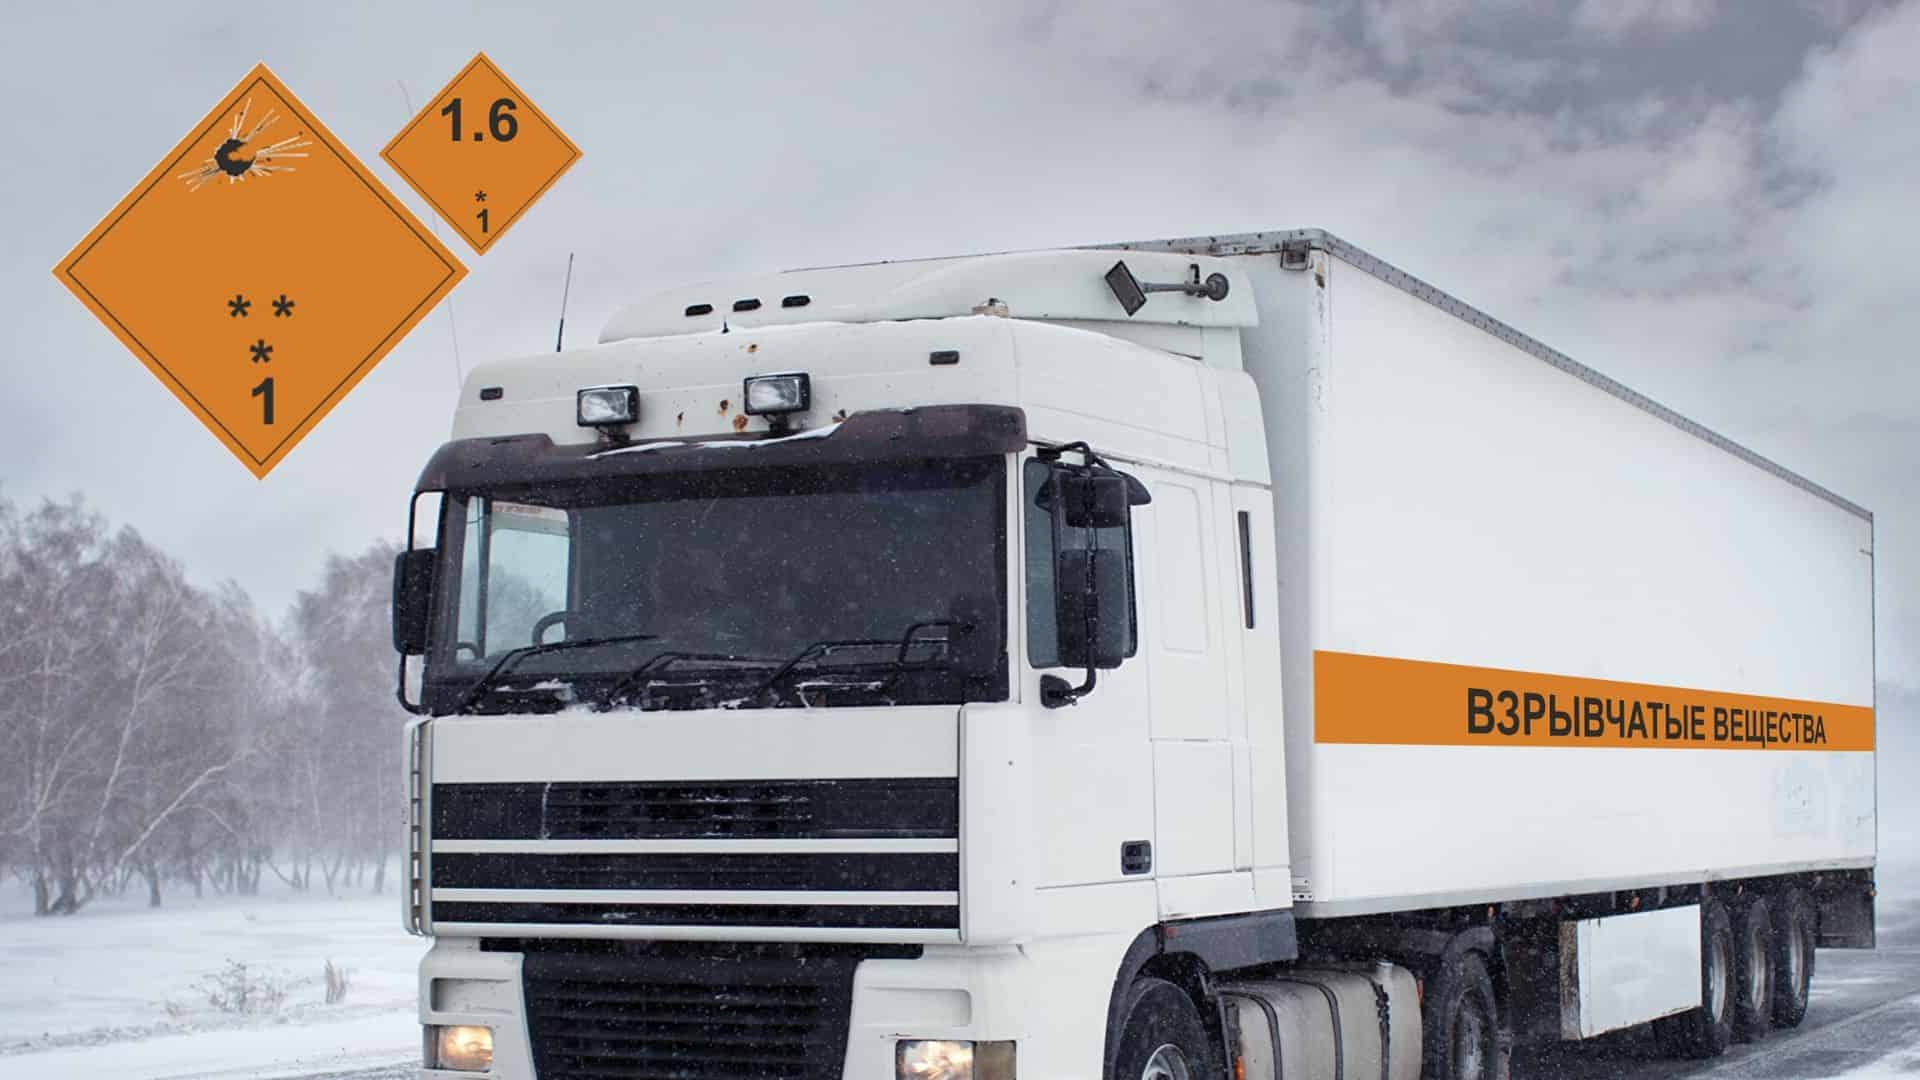 Перевозка опасных грузов обучение водителей бобруйск